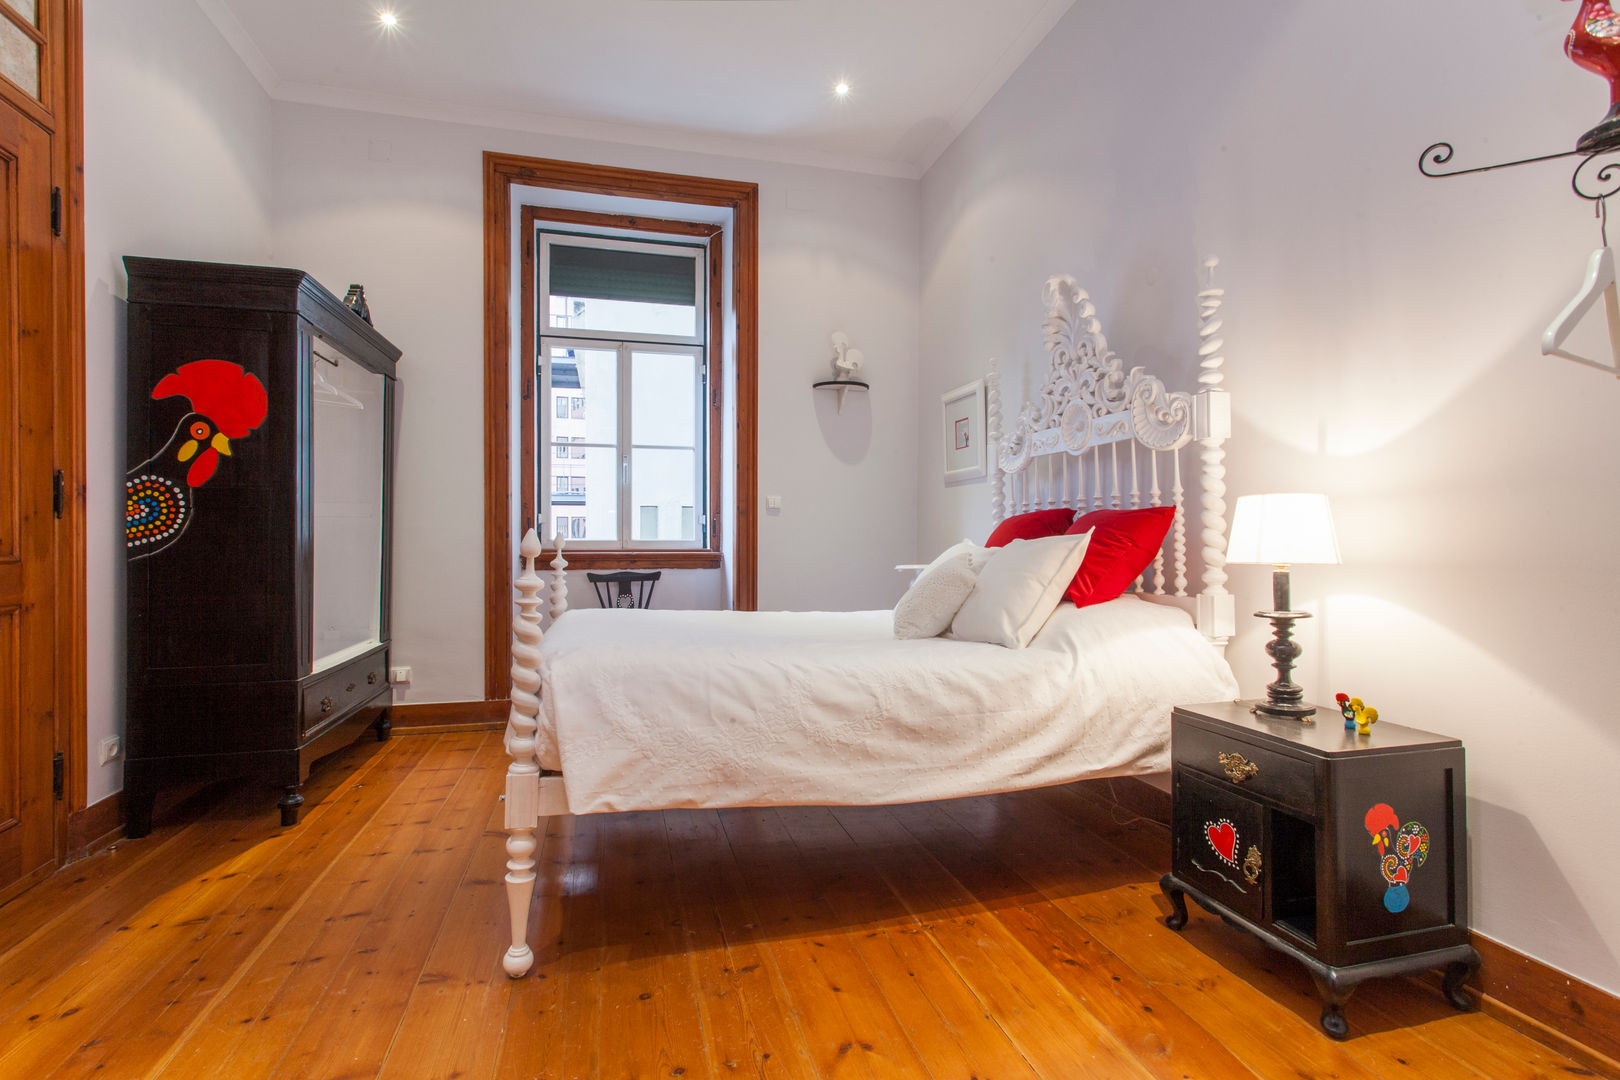 Apartamento Alma Lusa, uma casa portuguesa, com certeza!, alma portuguesa alma portuguesa Dormitorios rústicos